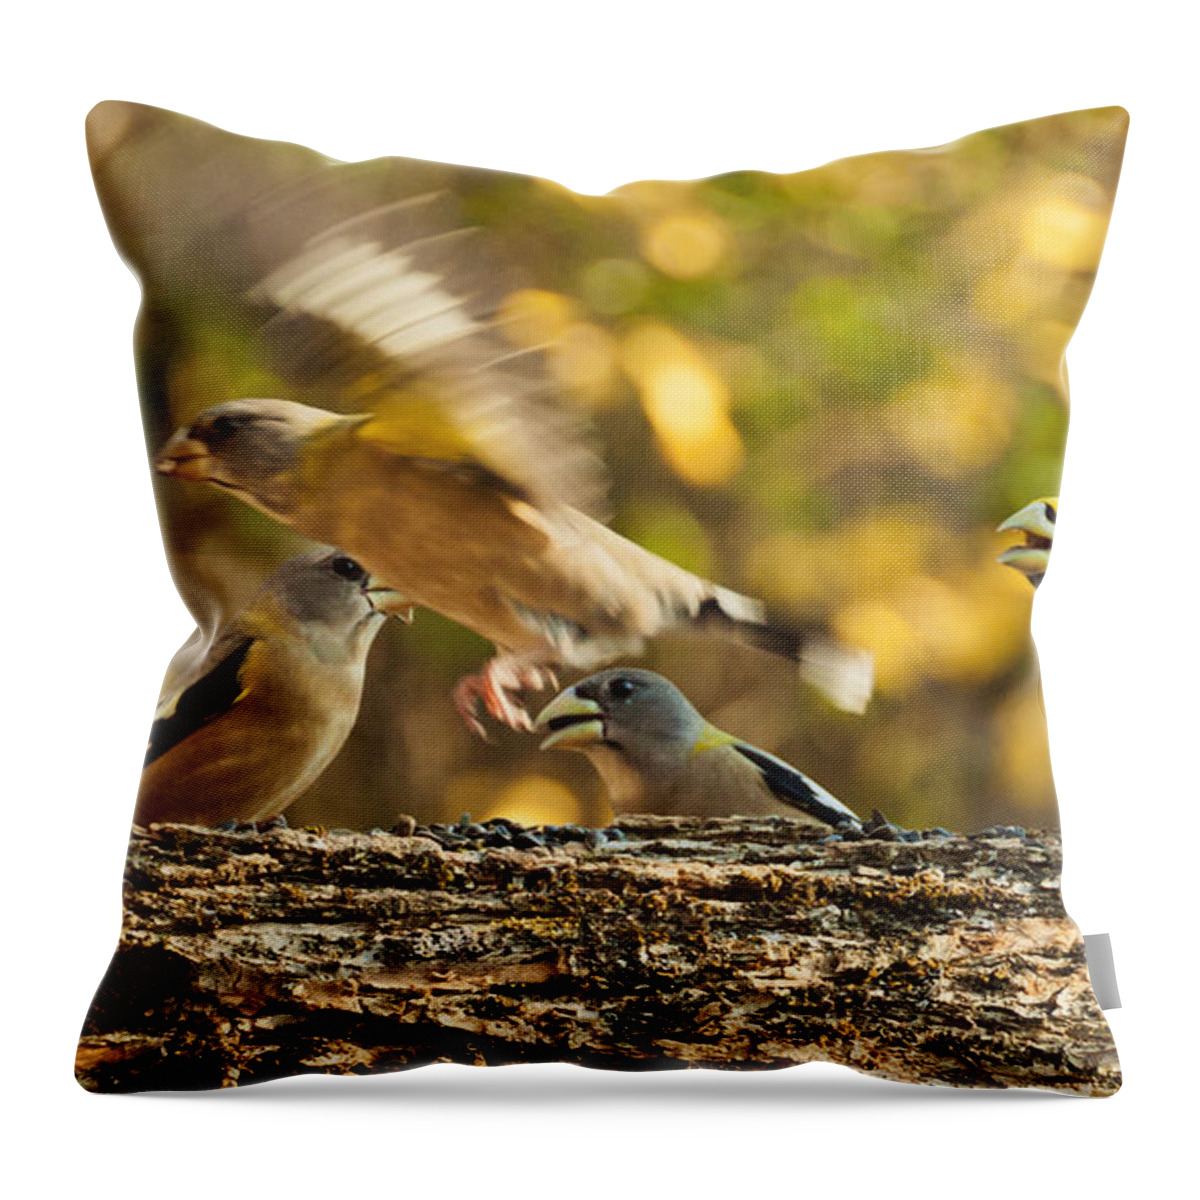 Grosbeak Throw Pillow featuring the photograph Busy Birds by Cheryl Baxter